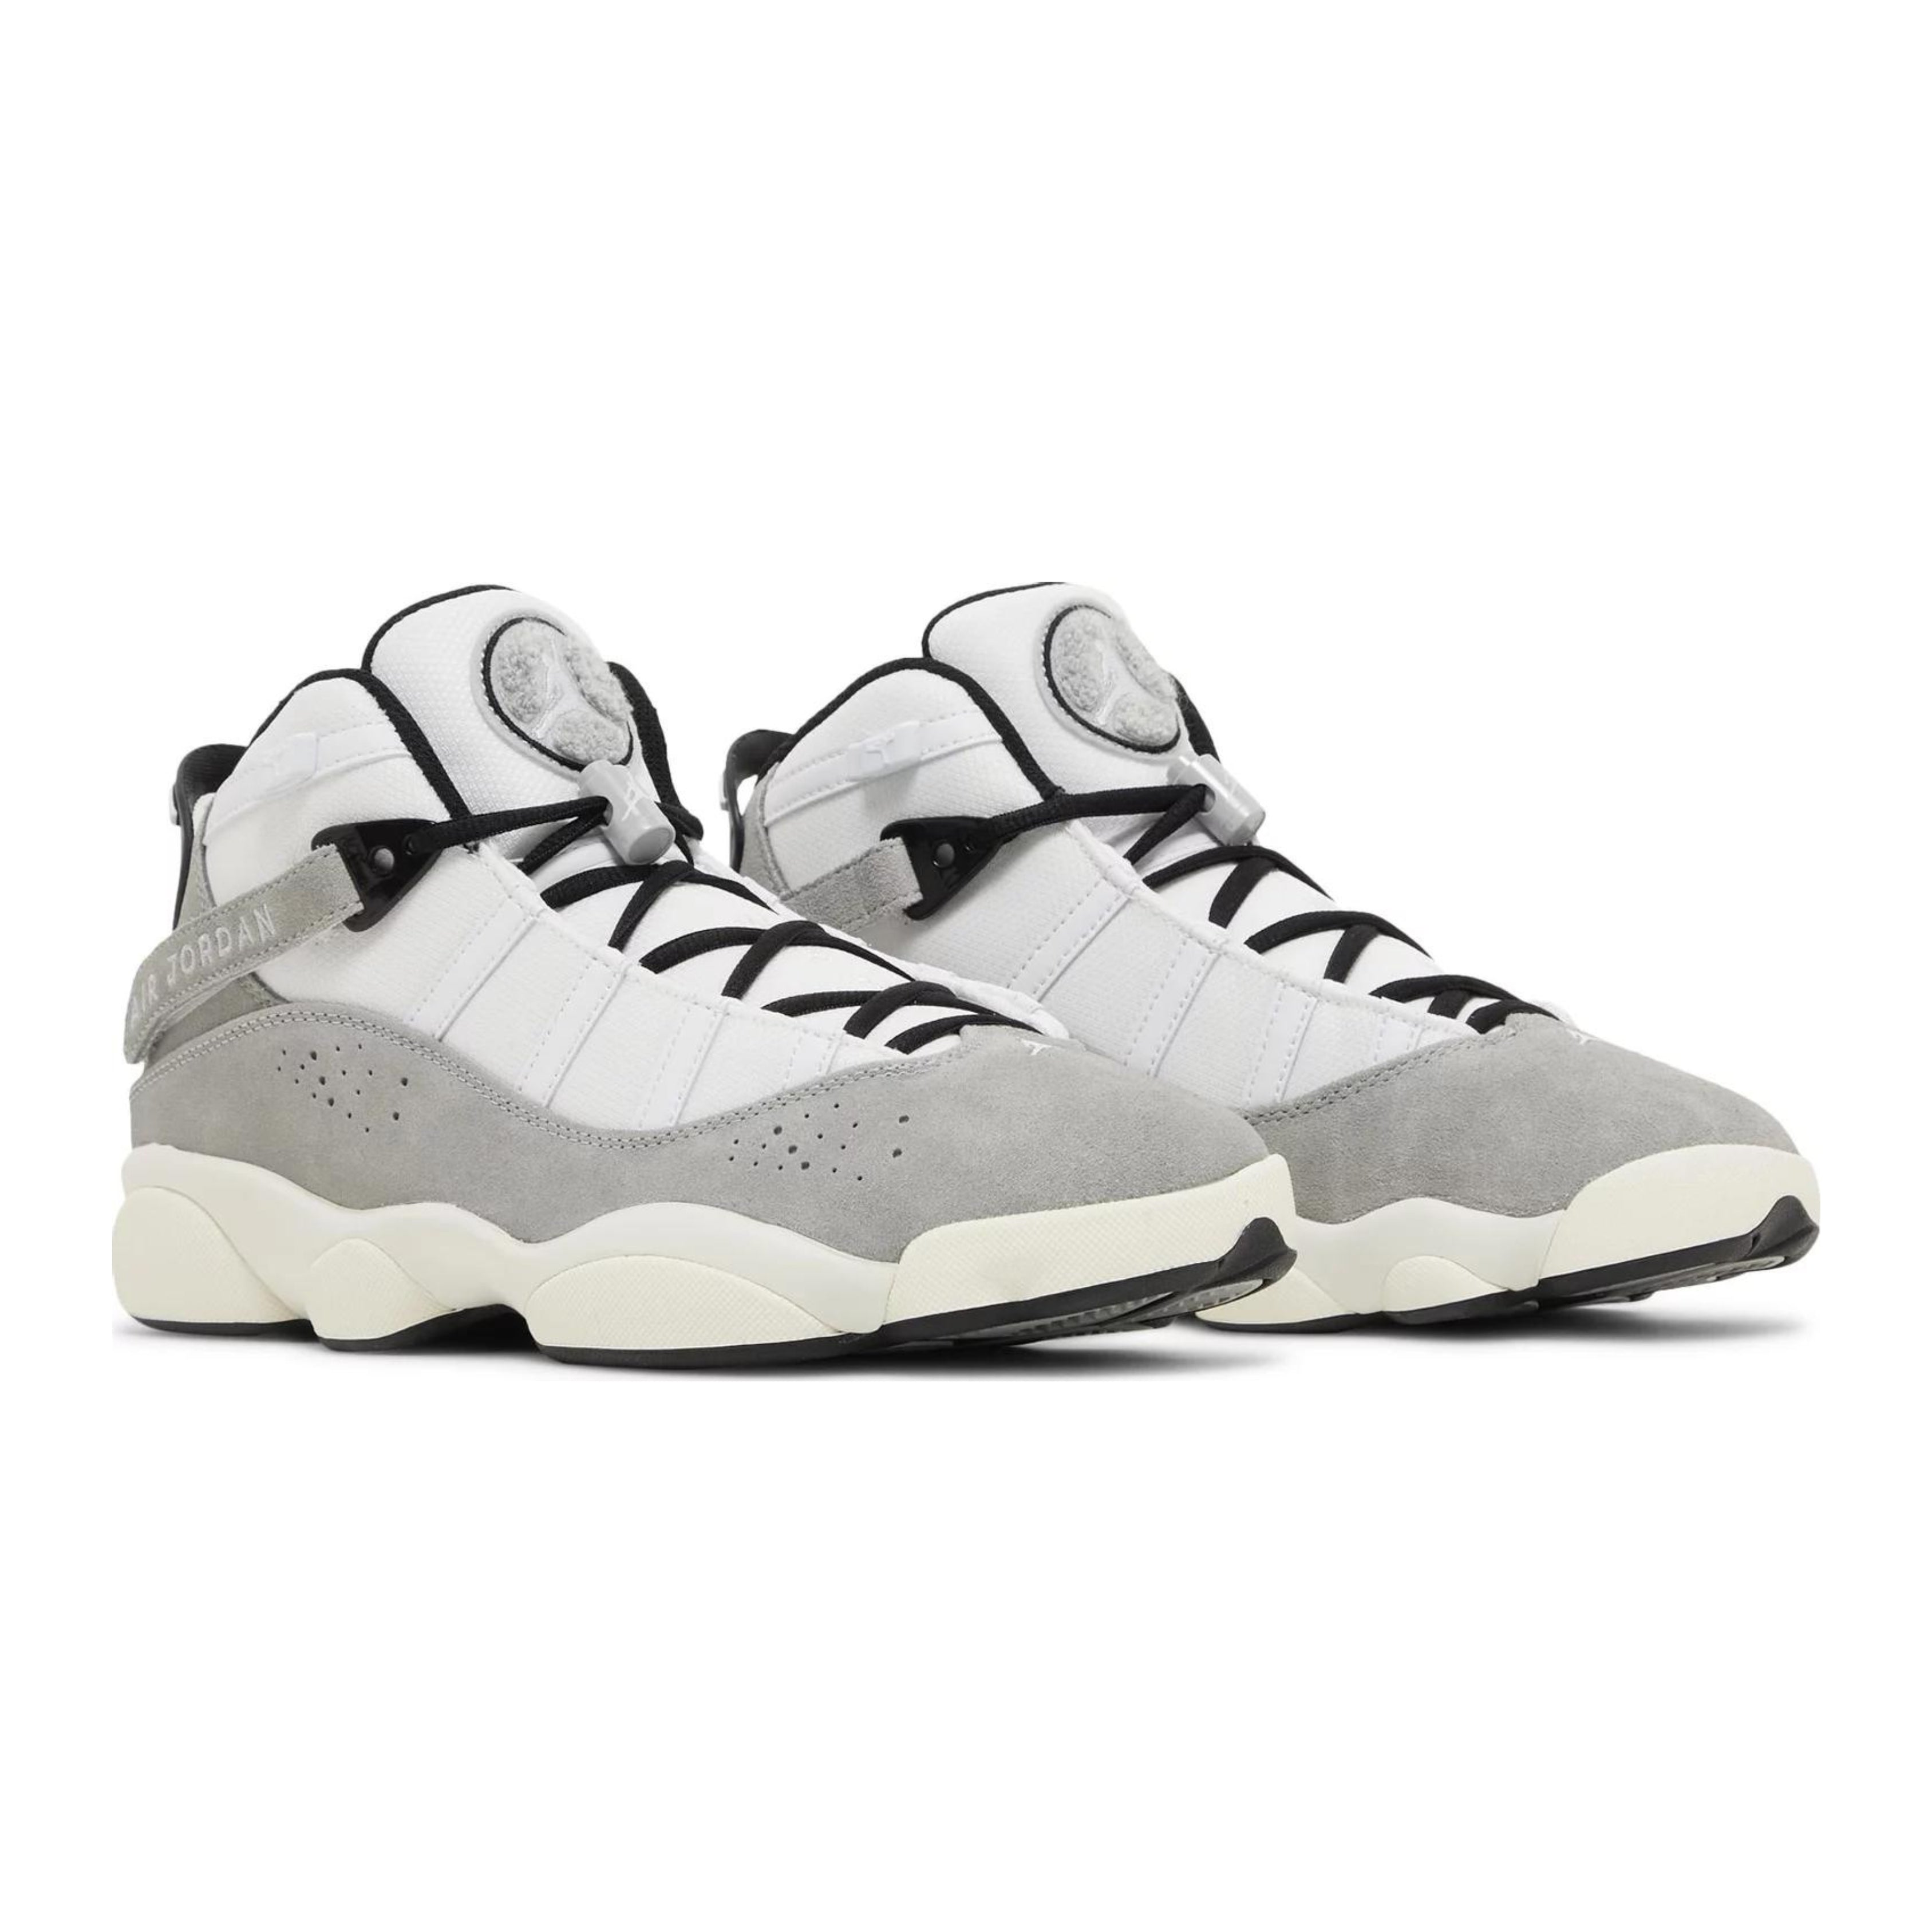 Jordan 6 Rings Cement Grey